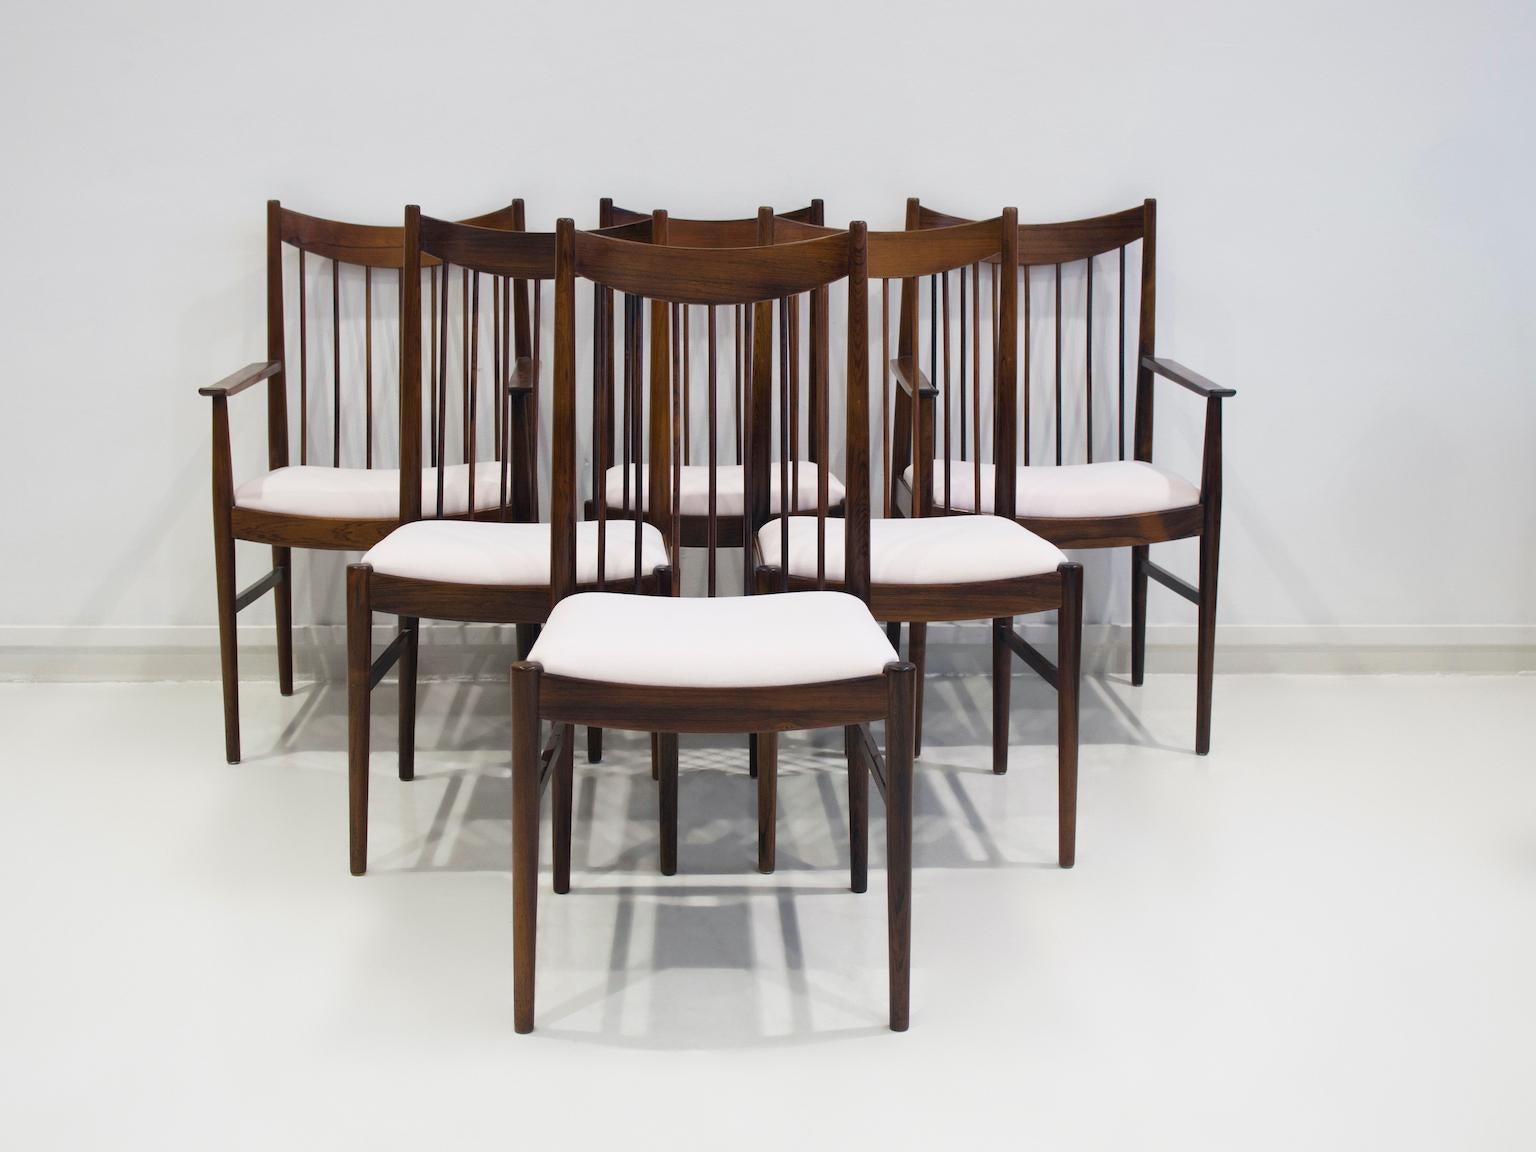 Satz von sechs Stühlen, Modell 422, entworfen von Arne Vodder in den 1960er Jahren. Vier Stühle ohne Armlehnen und zwei mit Armlehnen. Gestell aus massivem Hartholz, Sitze neu gepolstert mit sehr hellem rosa Möbelstoff, 63% CO und 37% LI. Produziert